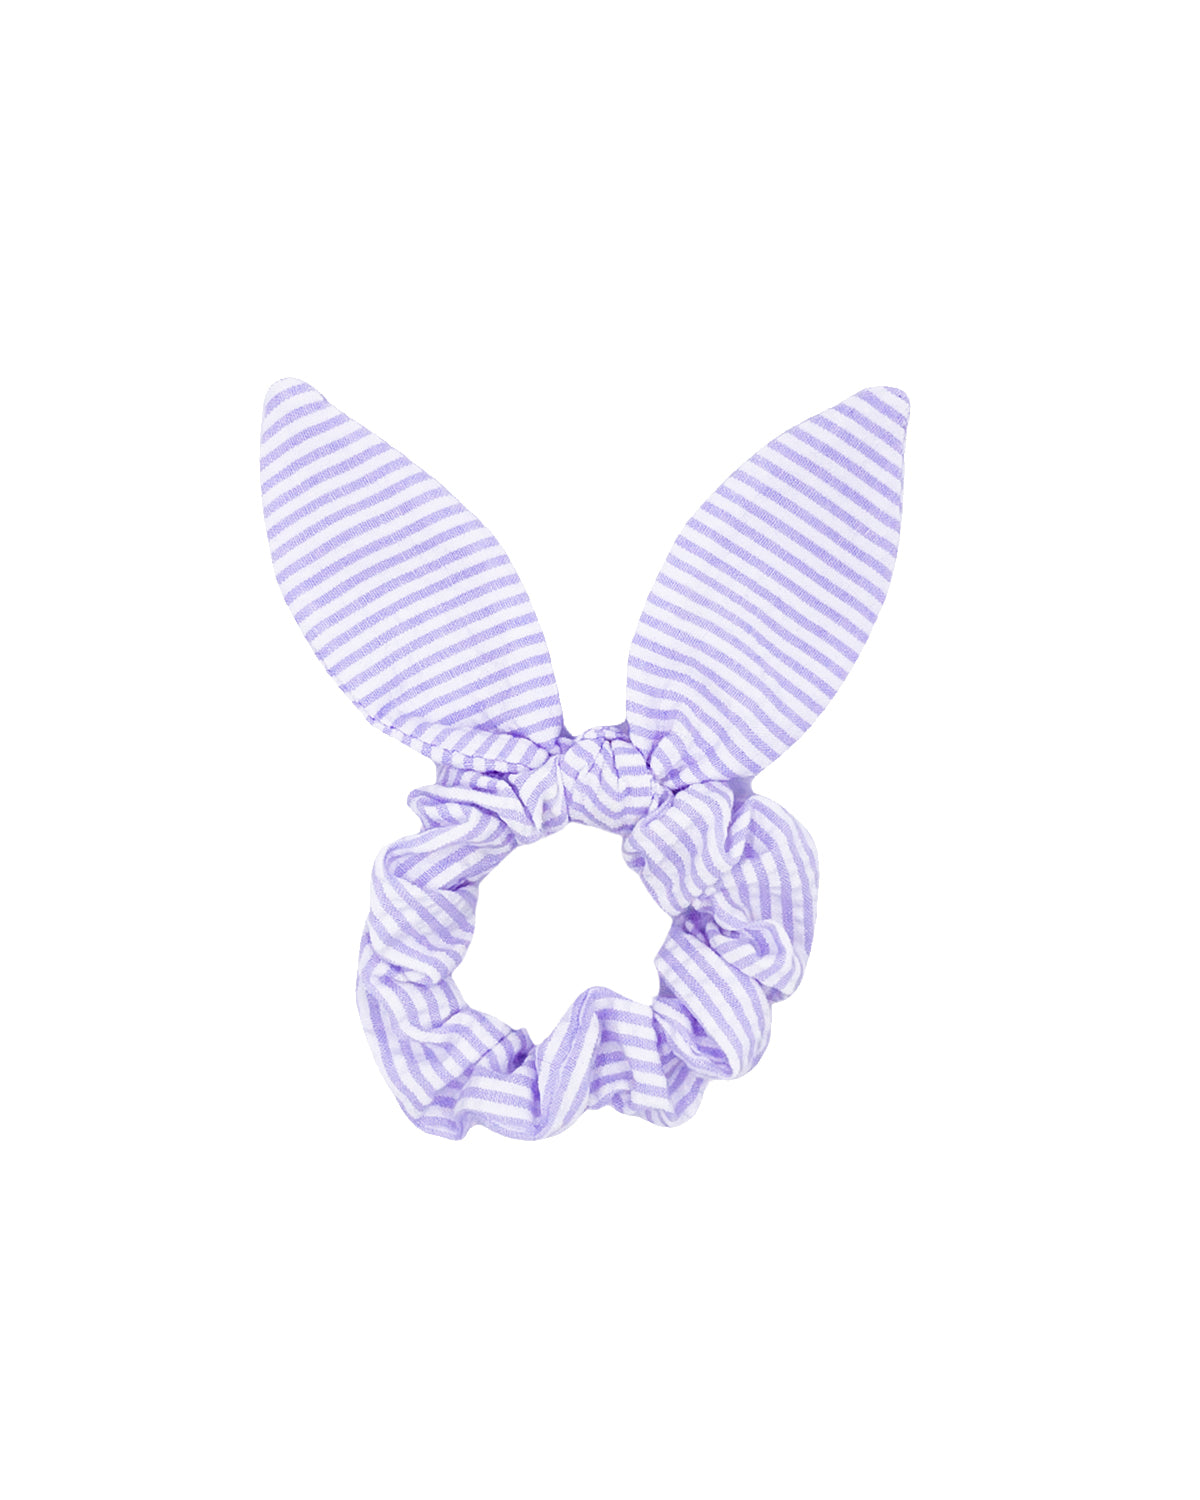 Seersucker Bow Scrunchie in Lavender/White